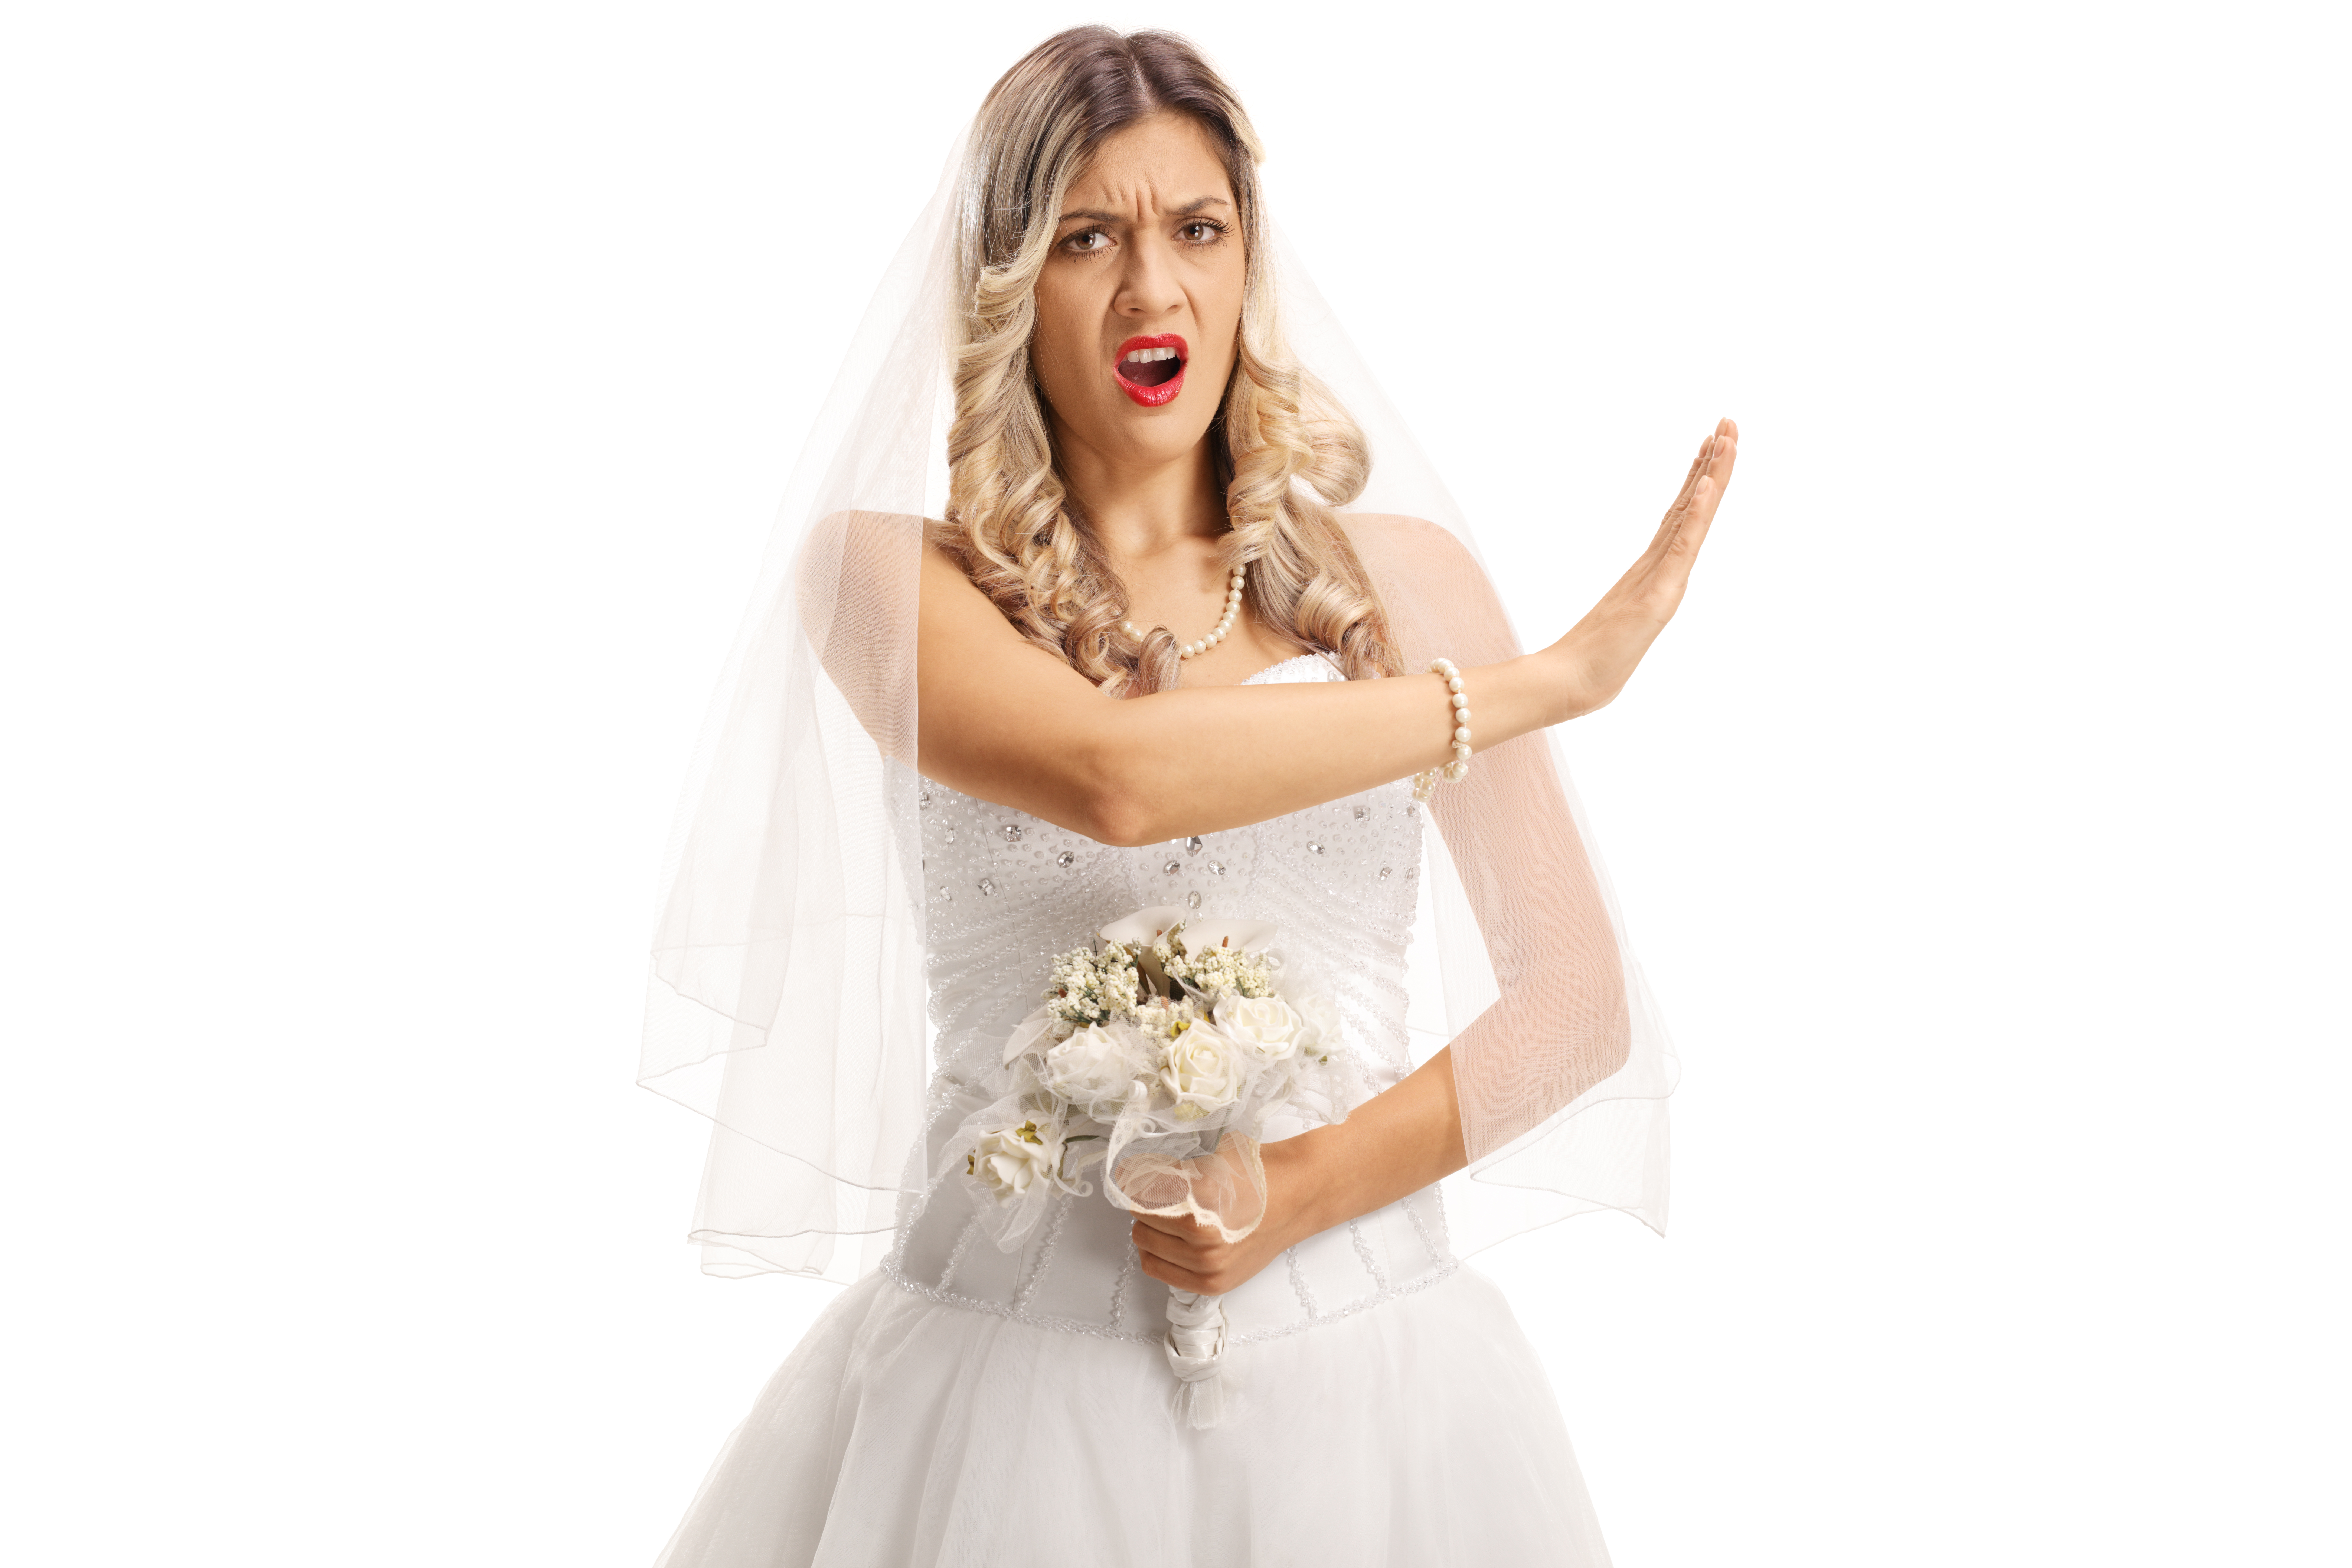 Wütende Braut | Quelle: Shutterstock